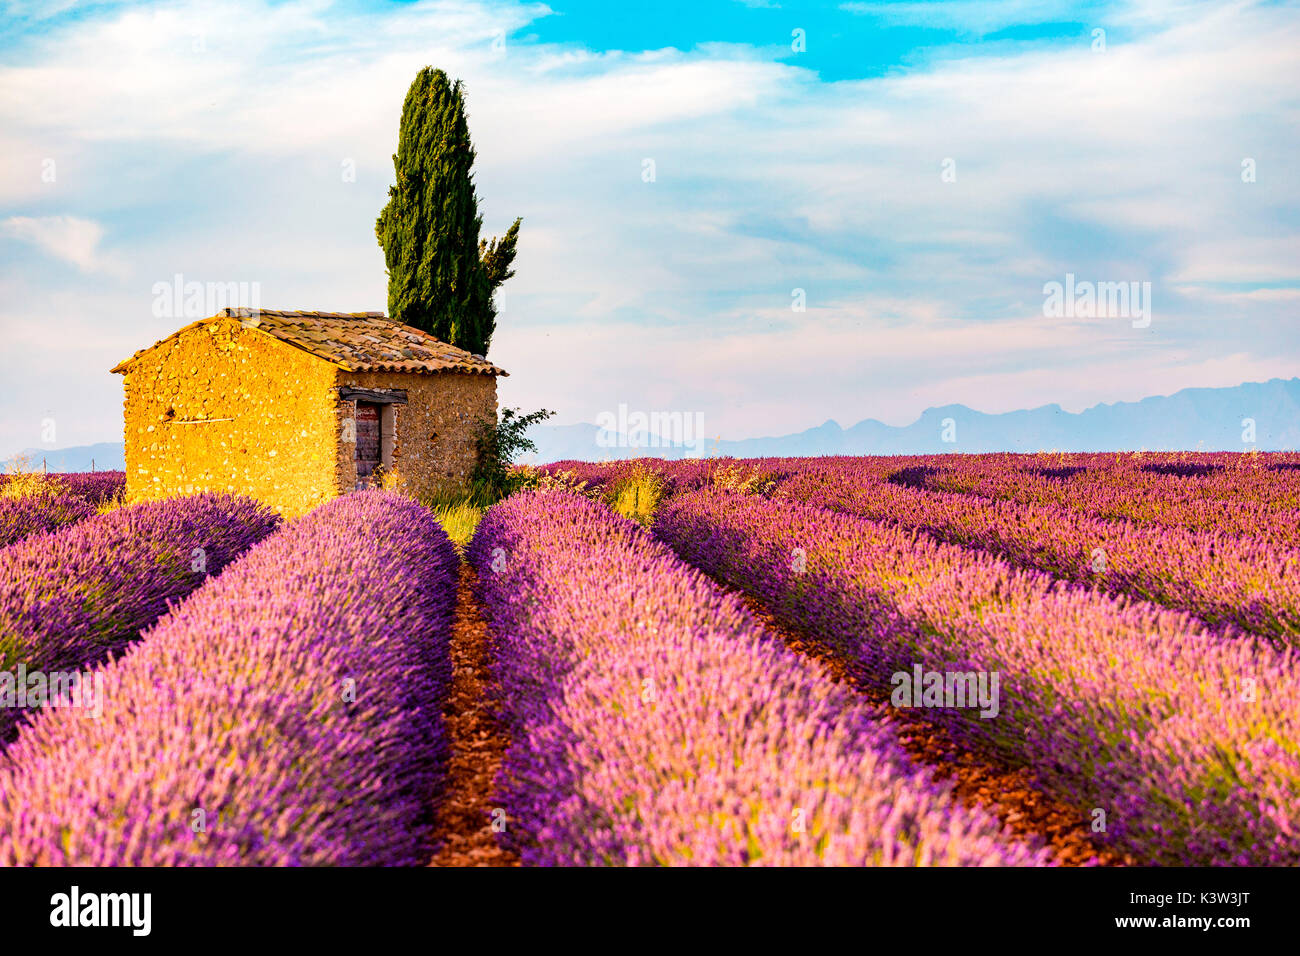 Provence, Plateau von Valensole, Frankreich, Europa. Einsame Bauernhaus und Zypressen Baum im Sonnenaufgang mit Sunburst, Lavendel Feld in voller Blüte. Stockfoto